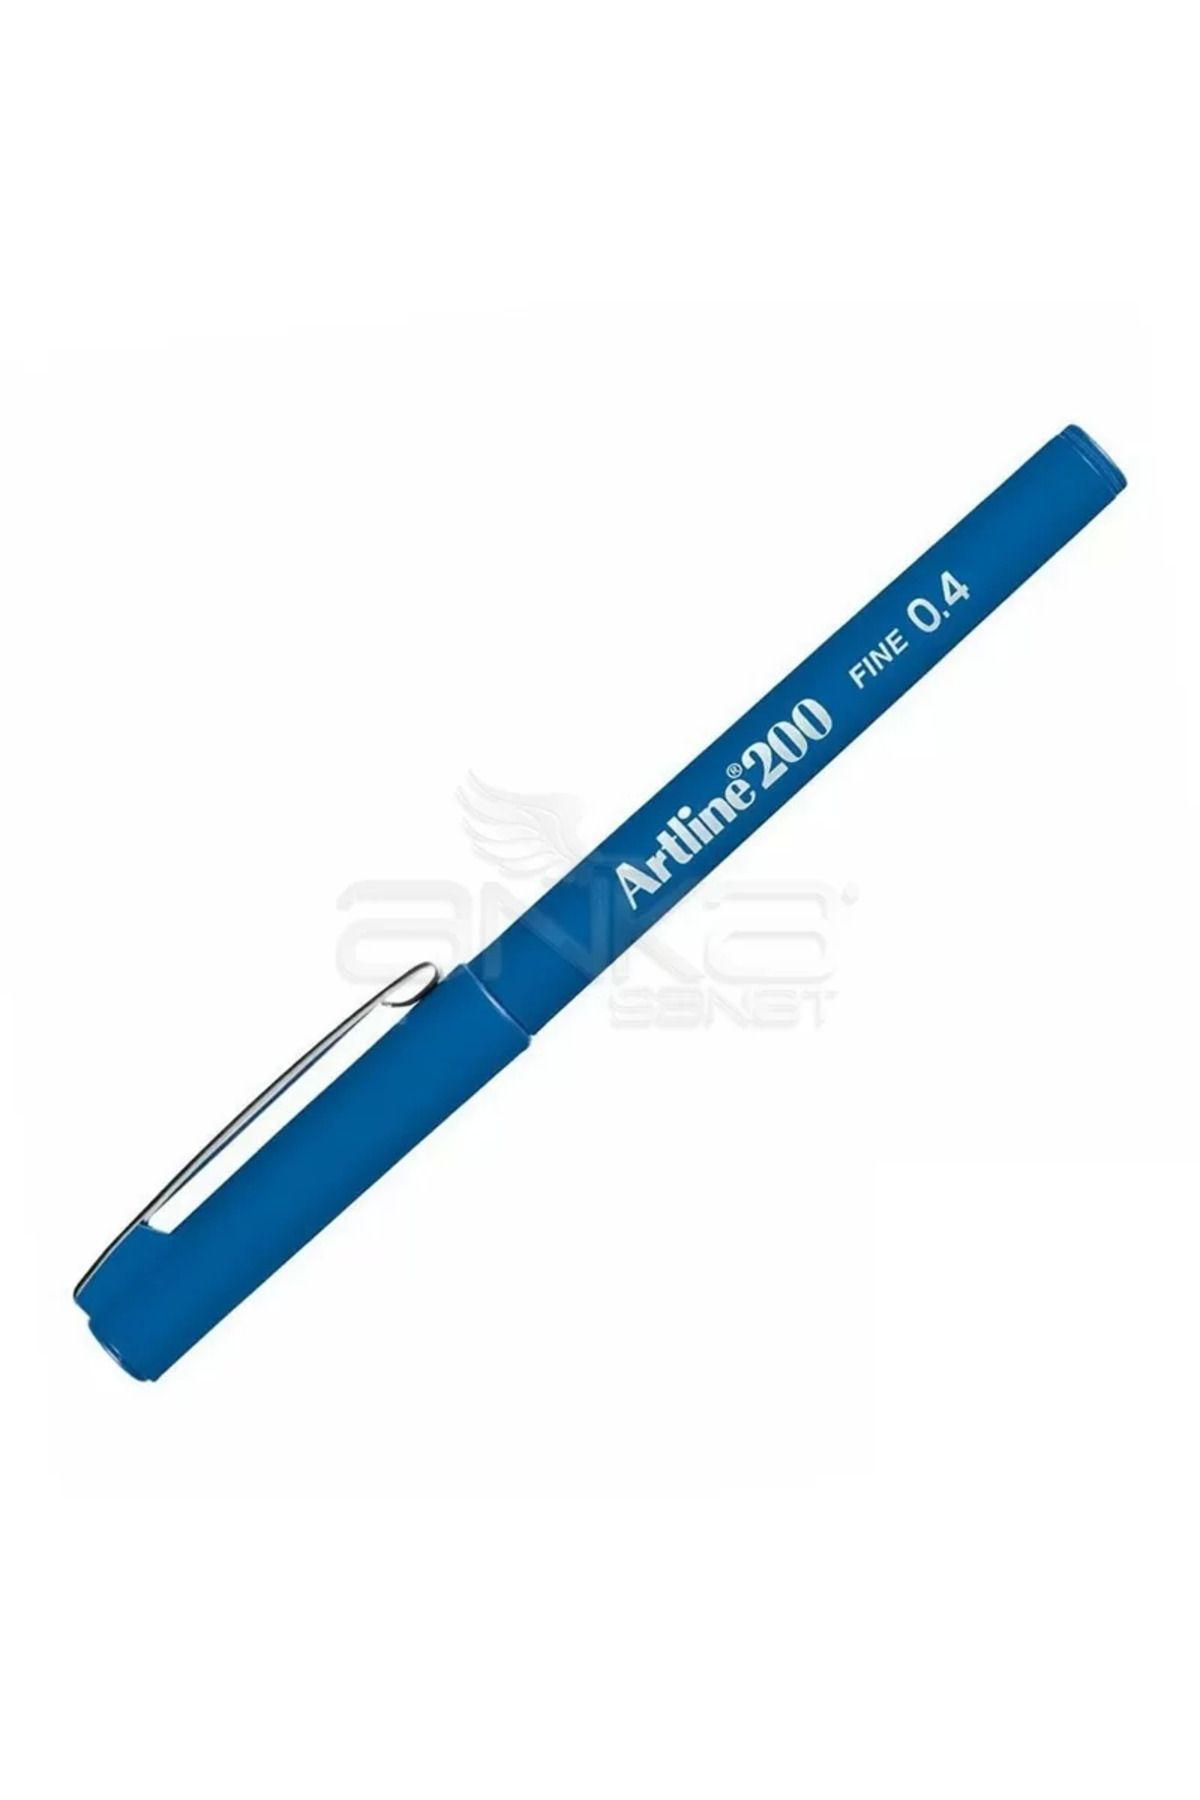 artline Fineliner 200 0.4mm İnce Uçlu Yazı Ve Çizim Kalemi Blue